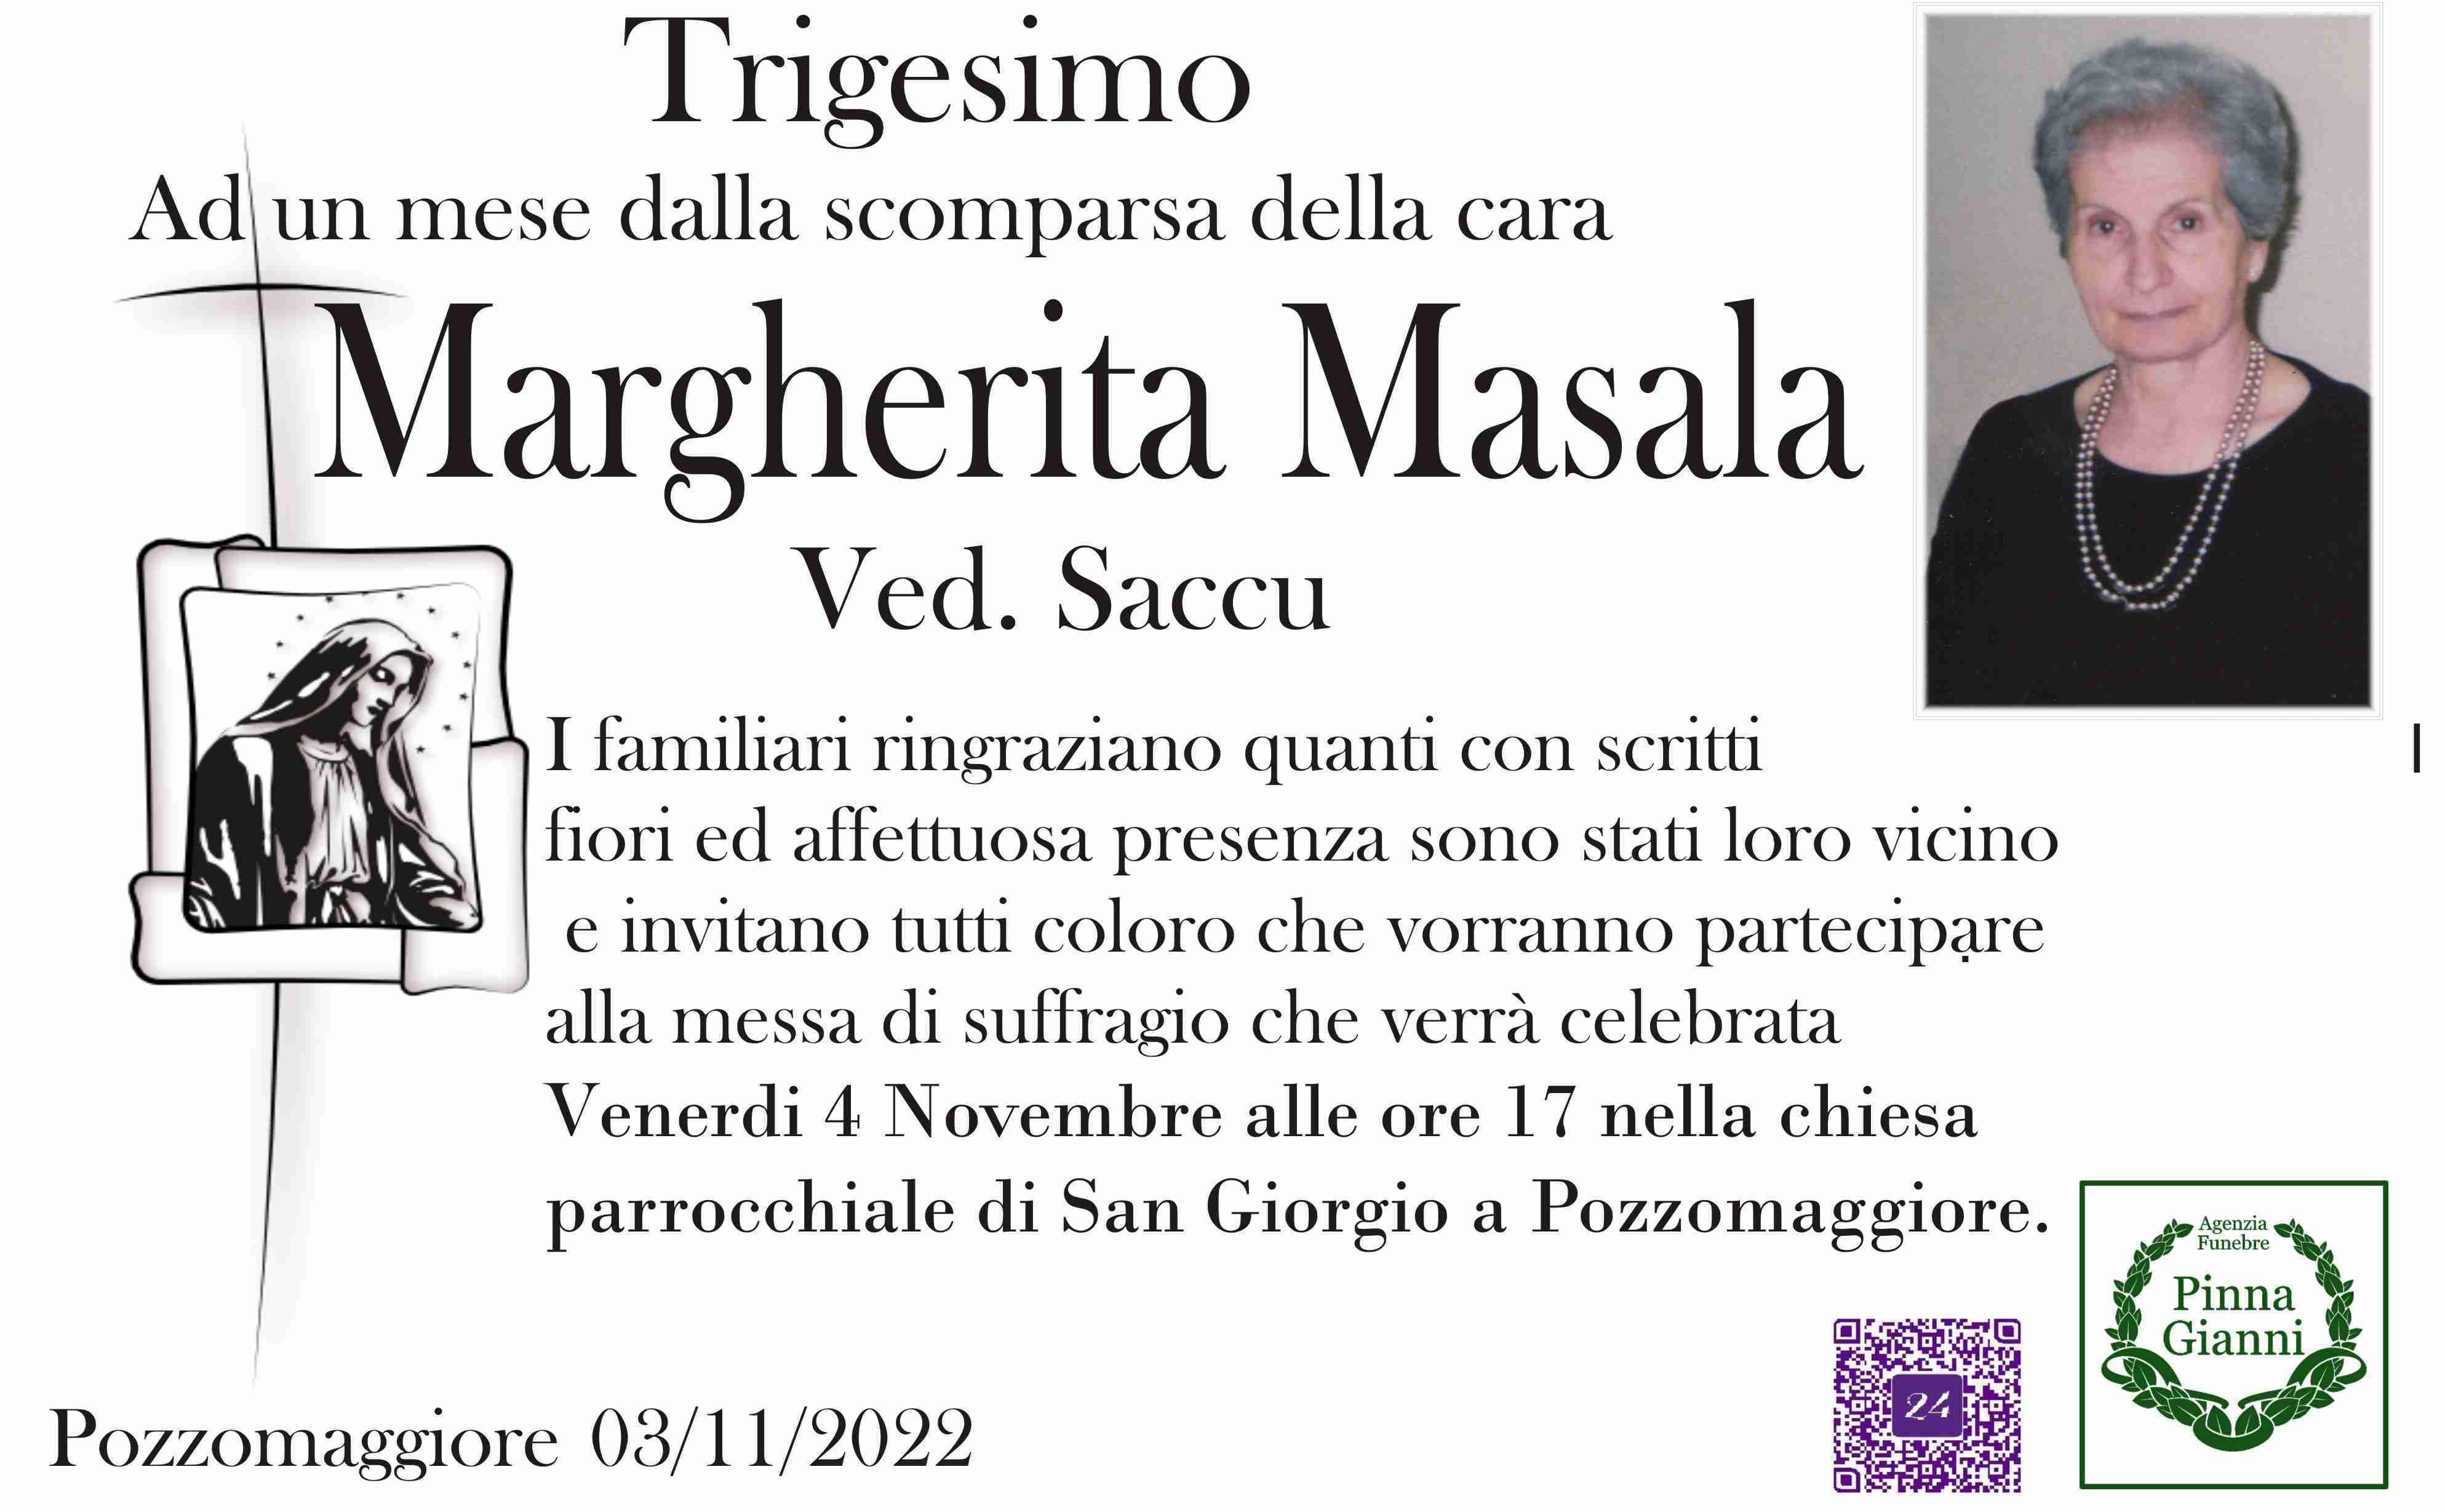 Margherita Masala